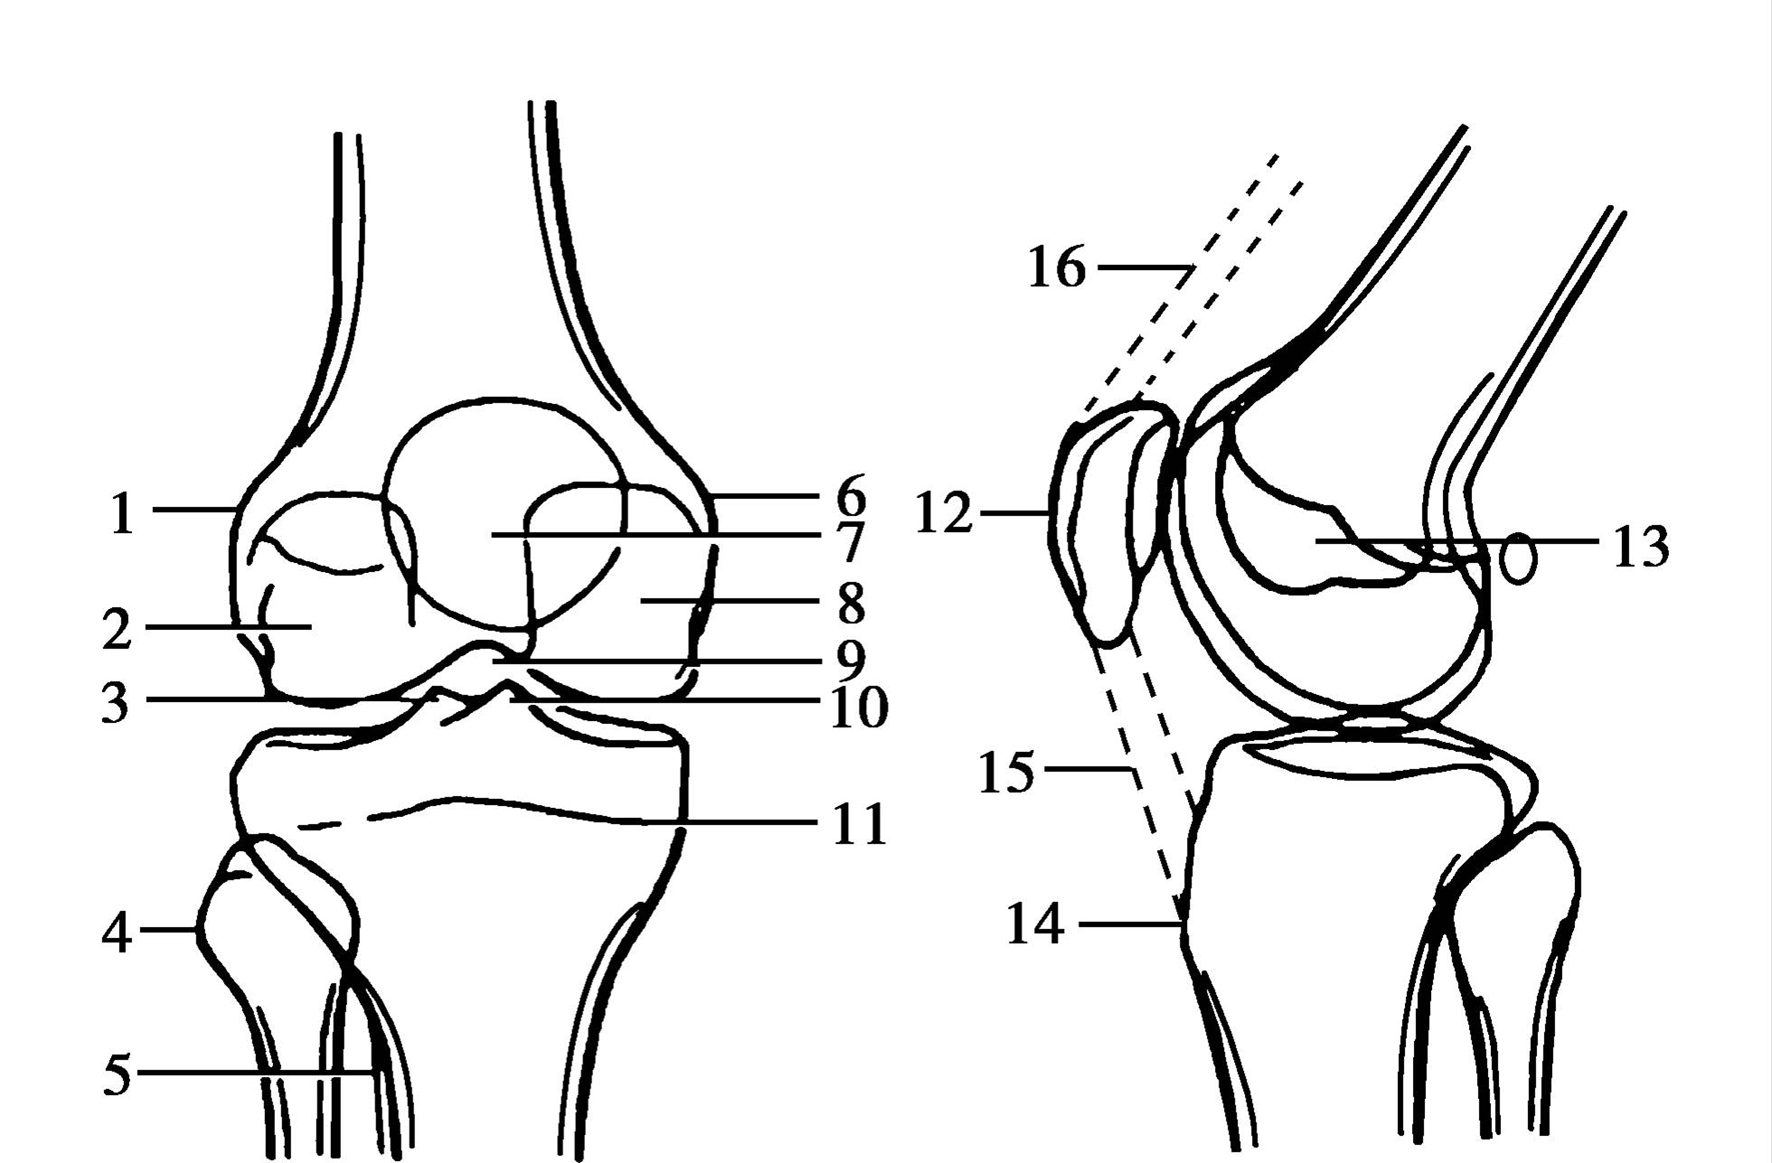 膝盖结构图 解剖图图片